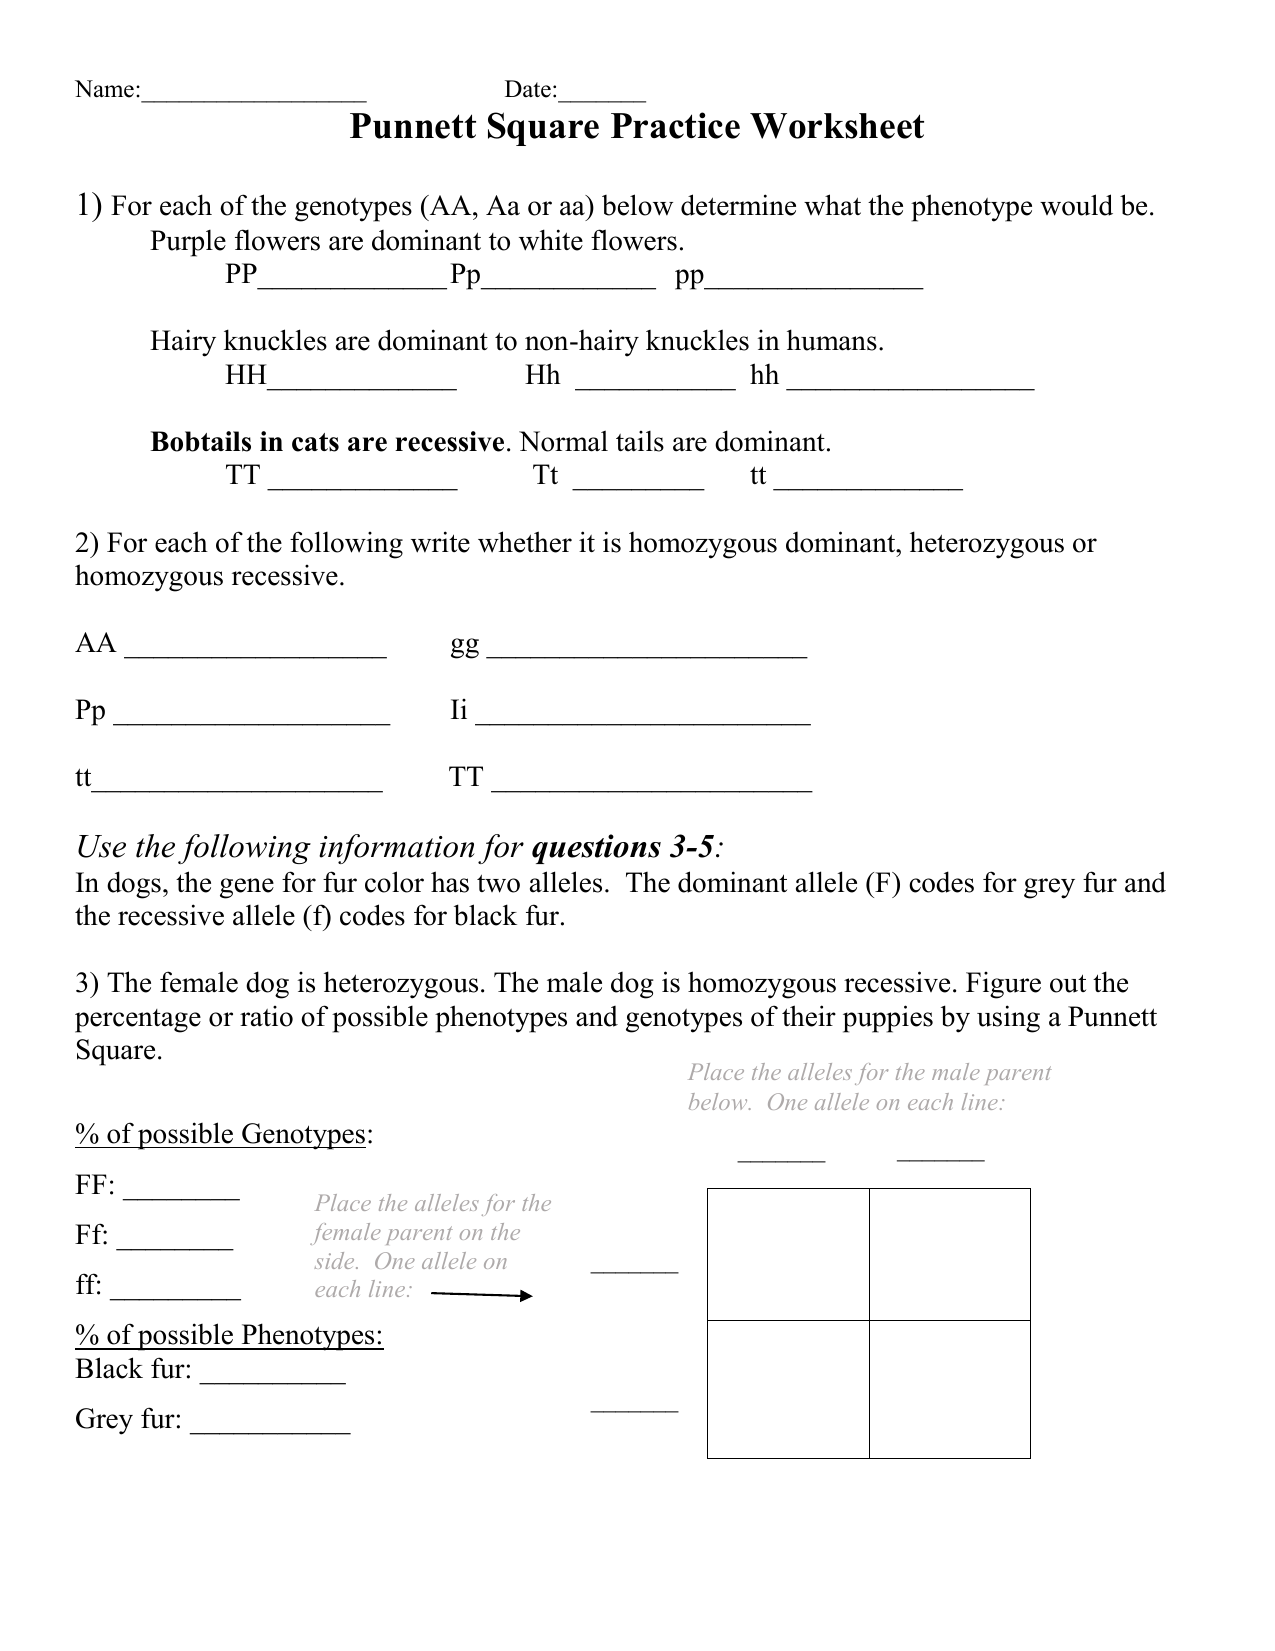 Punnett Square Practice Worksheet (Edited) Inside Punnett Square Practice Worksheet